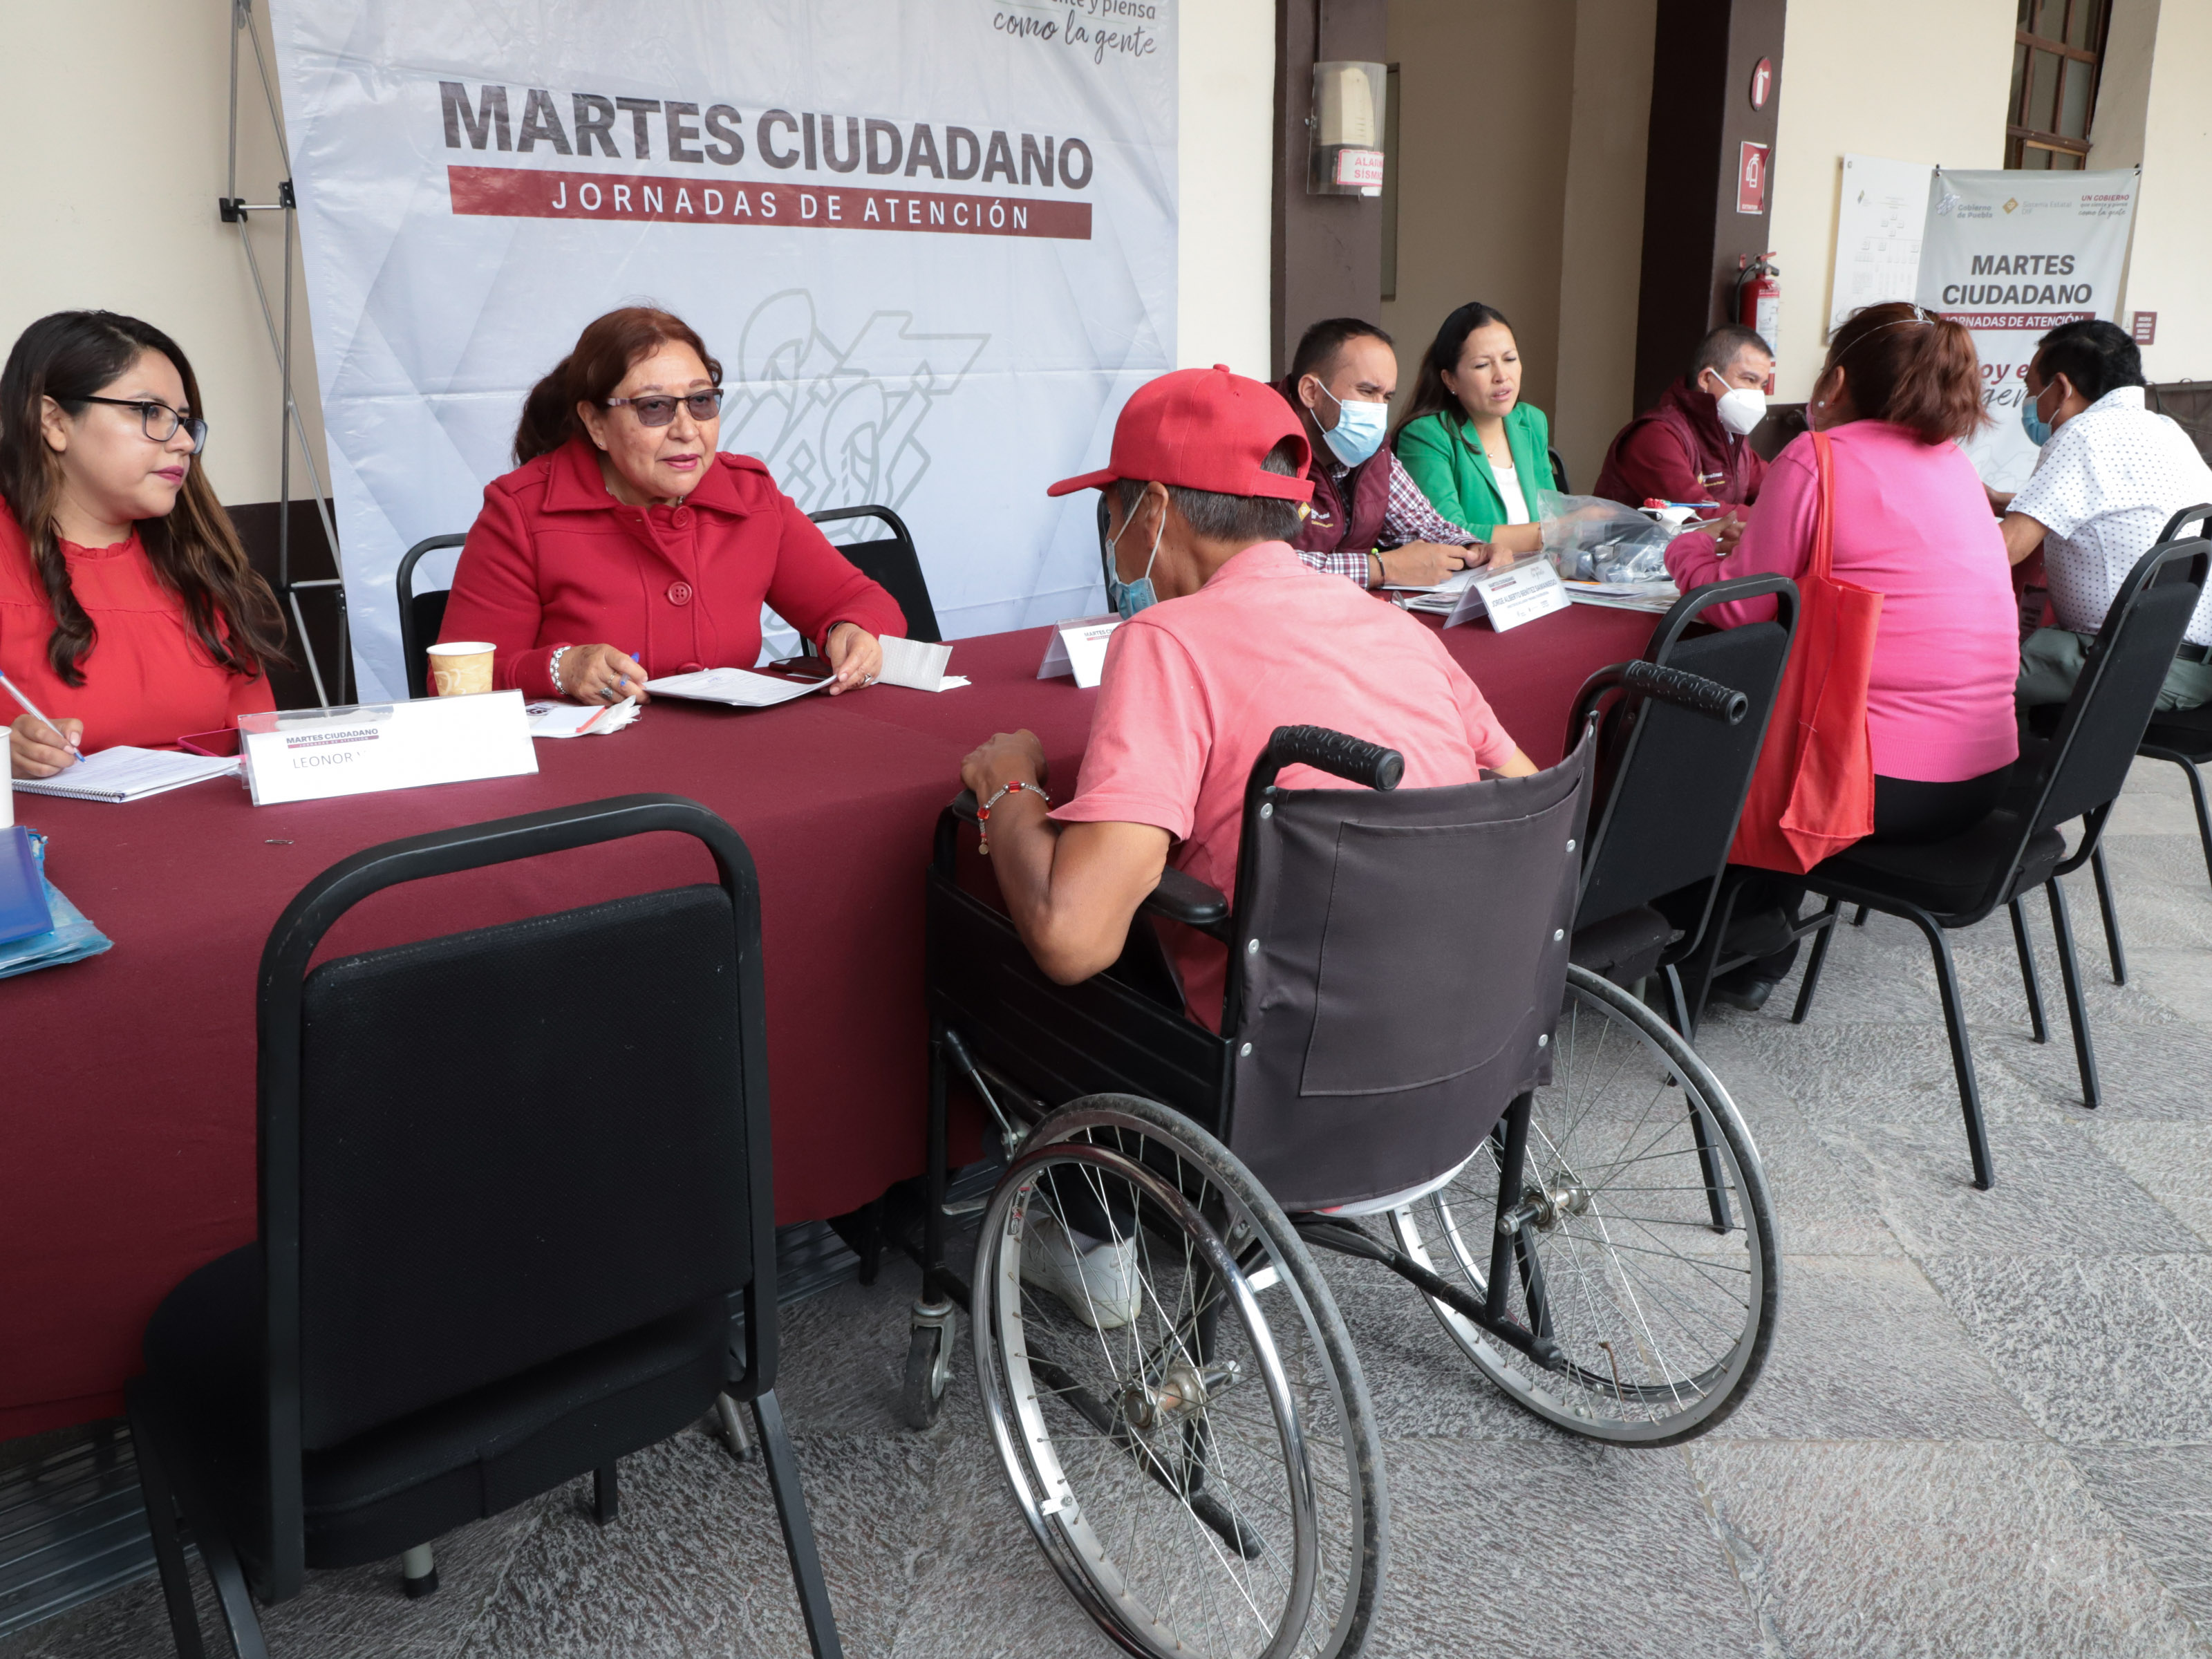 En “Martes Ciudadano”, SEDIF recibe y apoya a grupos de atención prioritaria